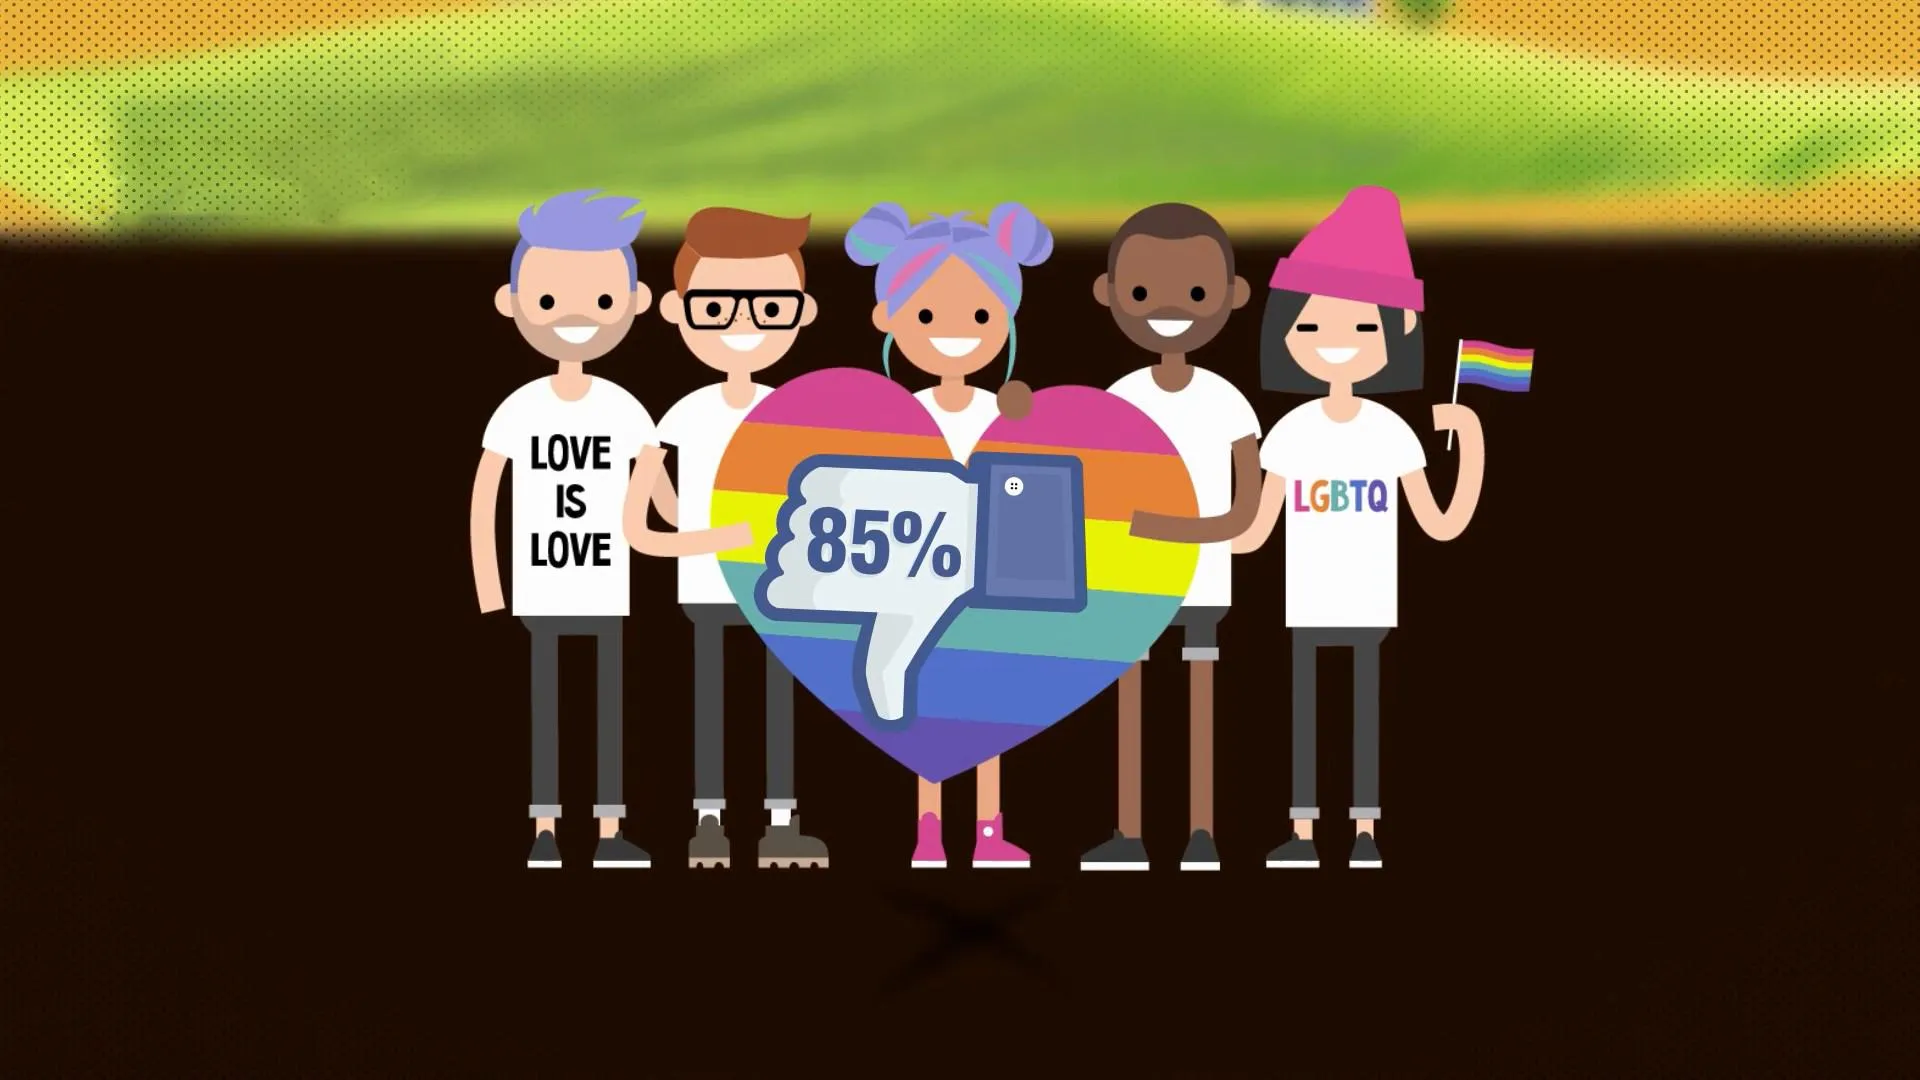 Більше, ніж половина українців негативно сприймають акції ЛГБТ